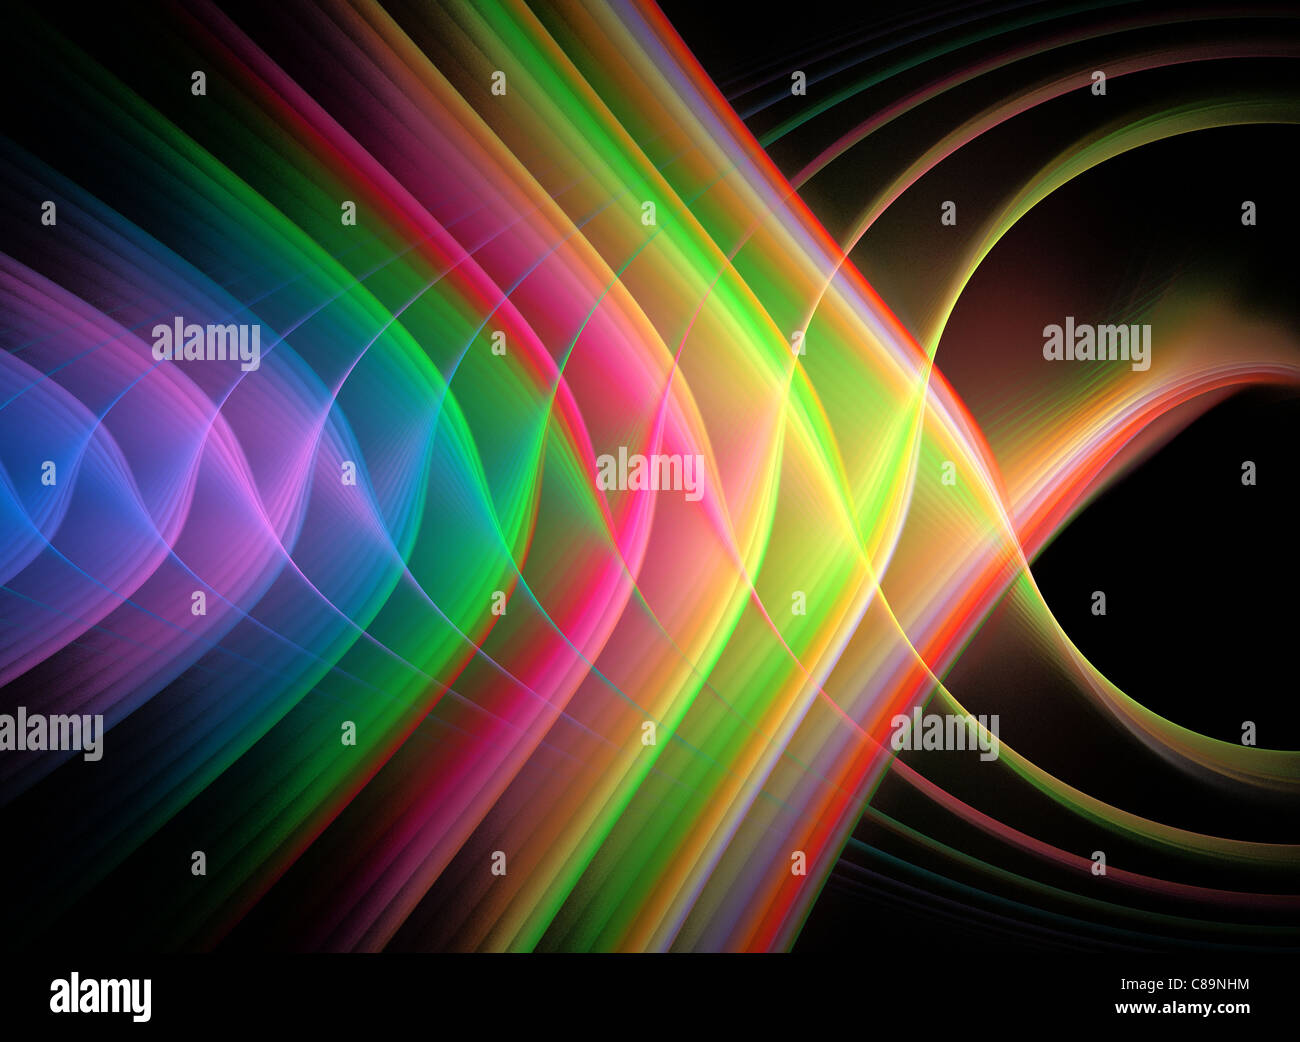 Fraktal-Abbildung von mehreren hellen Farben Stockfoto